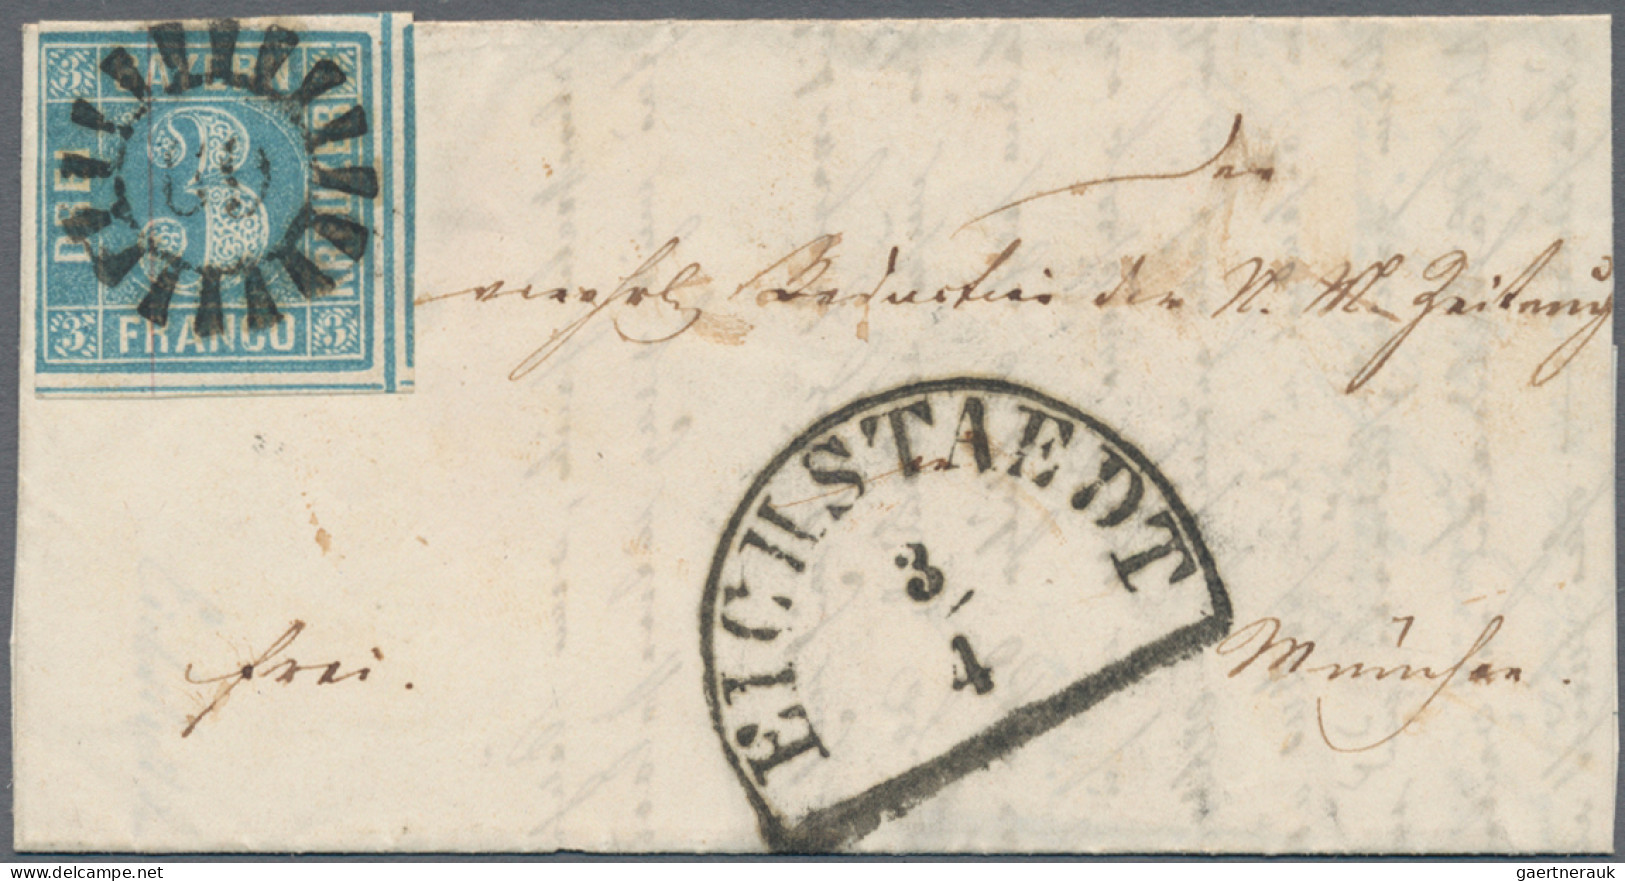 Bayern - Marken und Briefe: 1851/1860 (ca.), 3 Kr. blau (MiNr. 2 II), Partie von